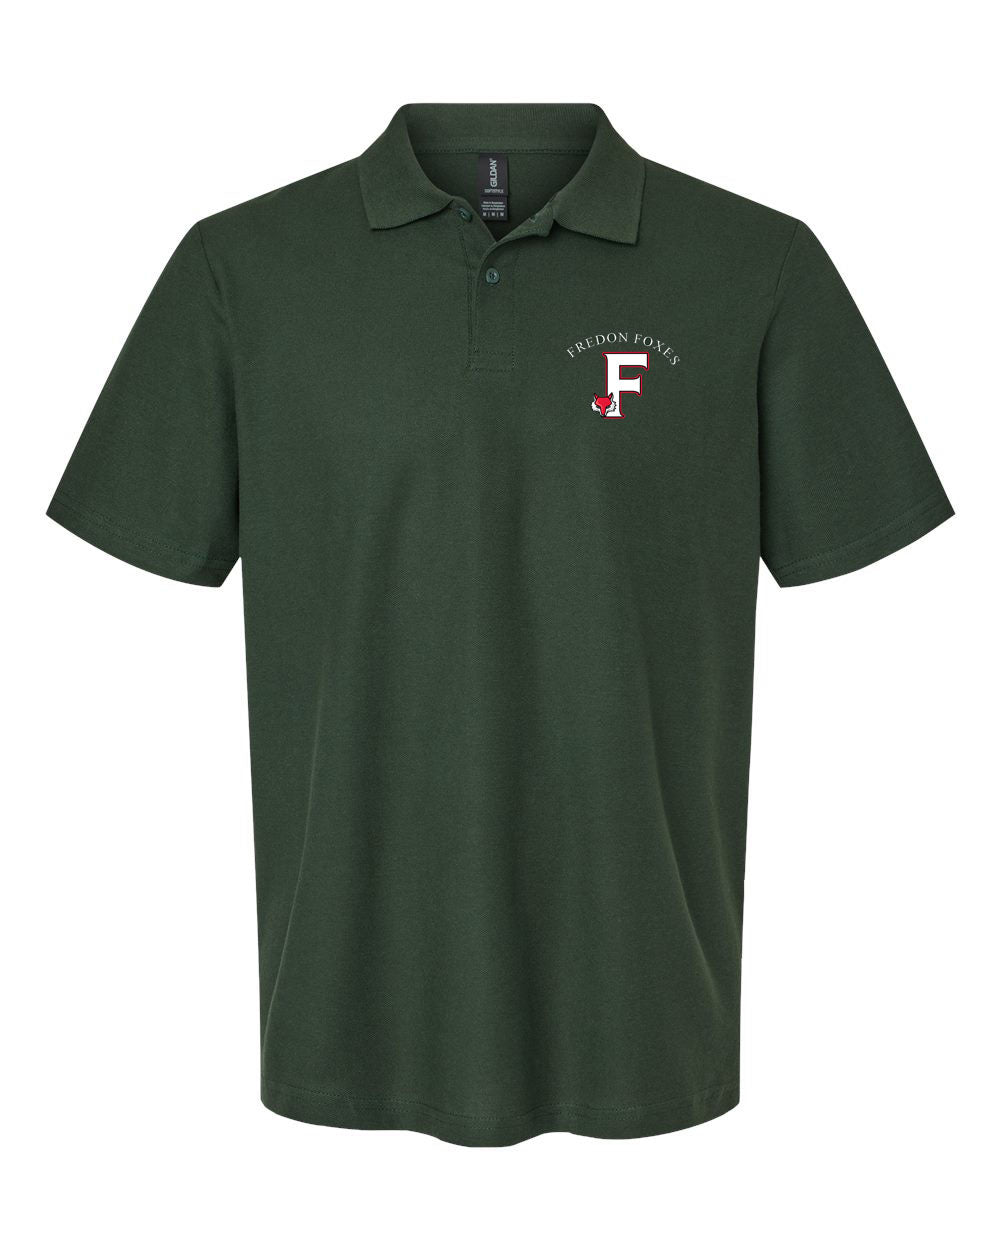 Fredon design 9 Polo T-Shirt